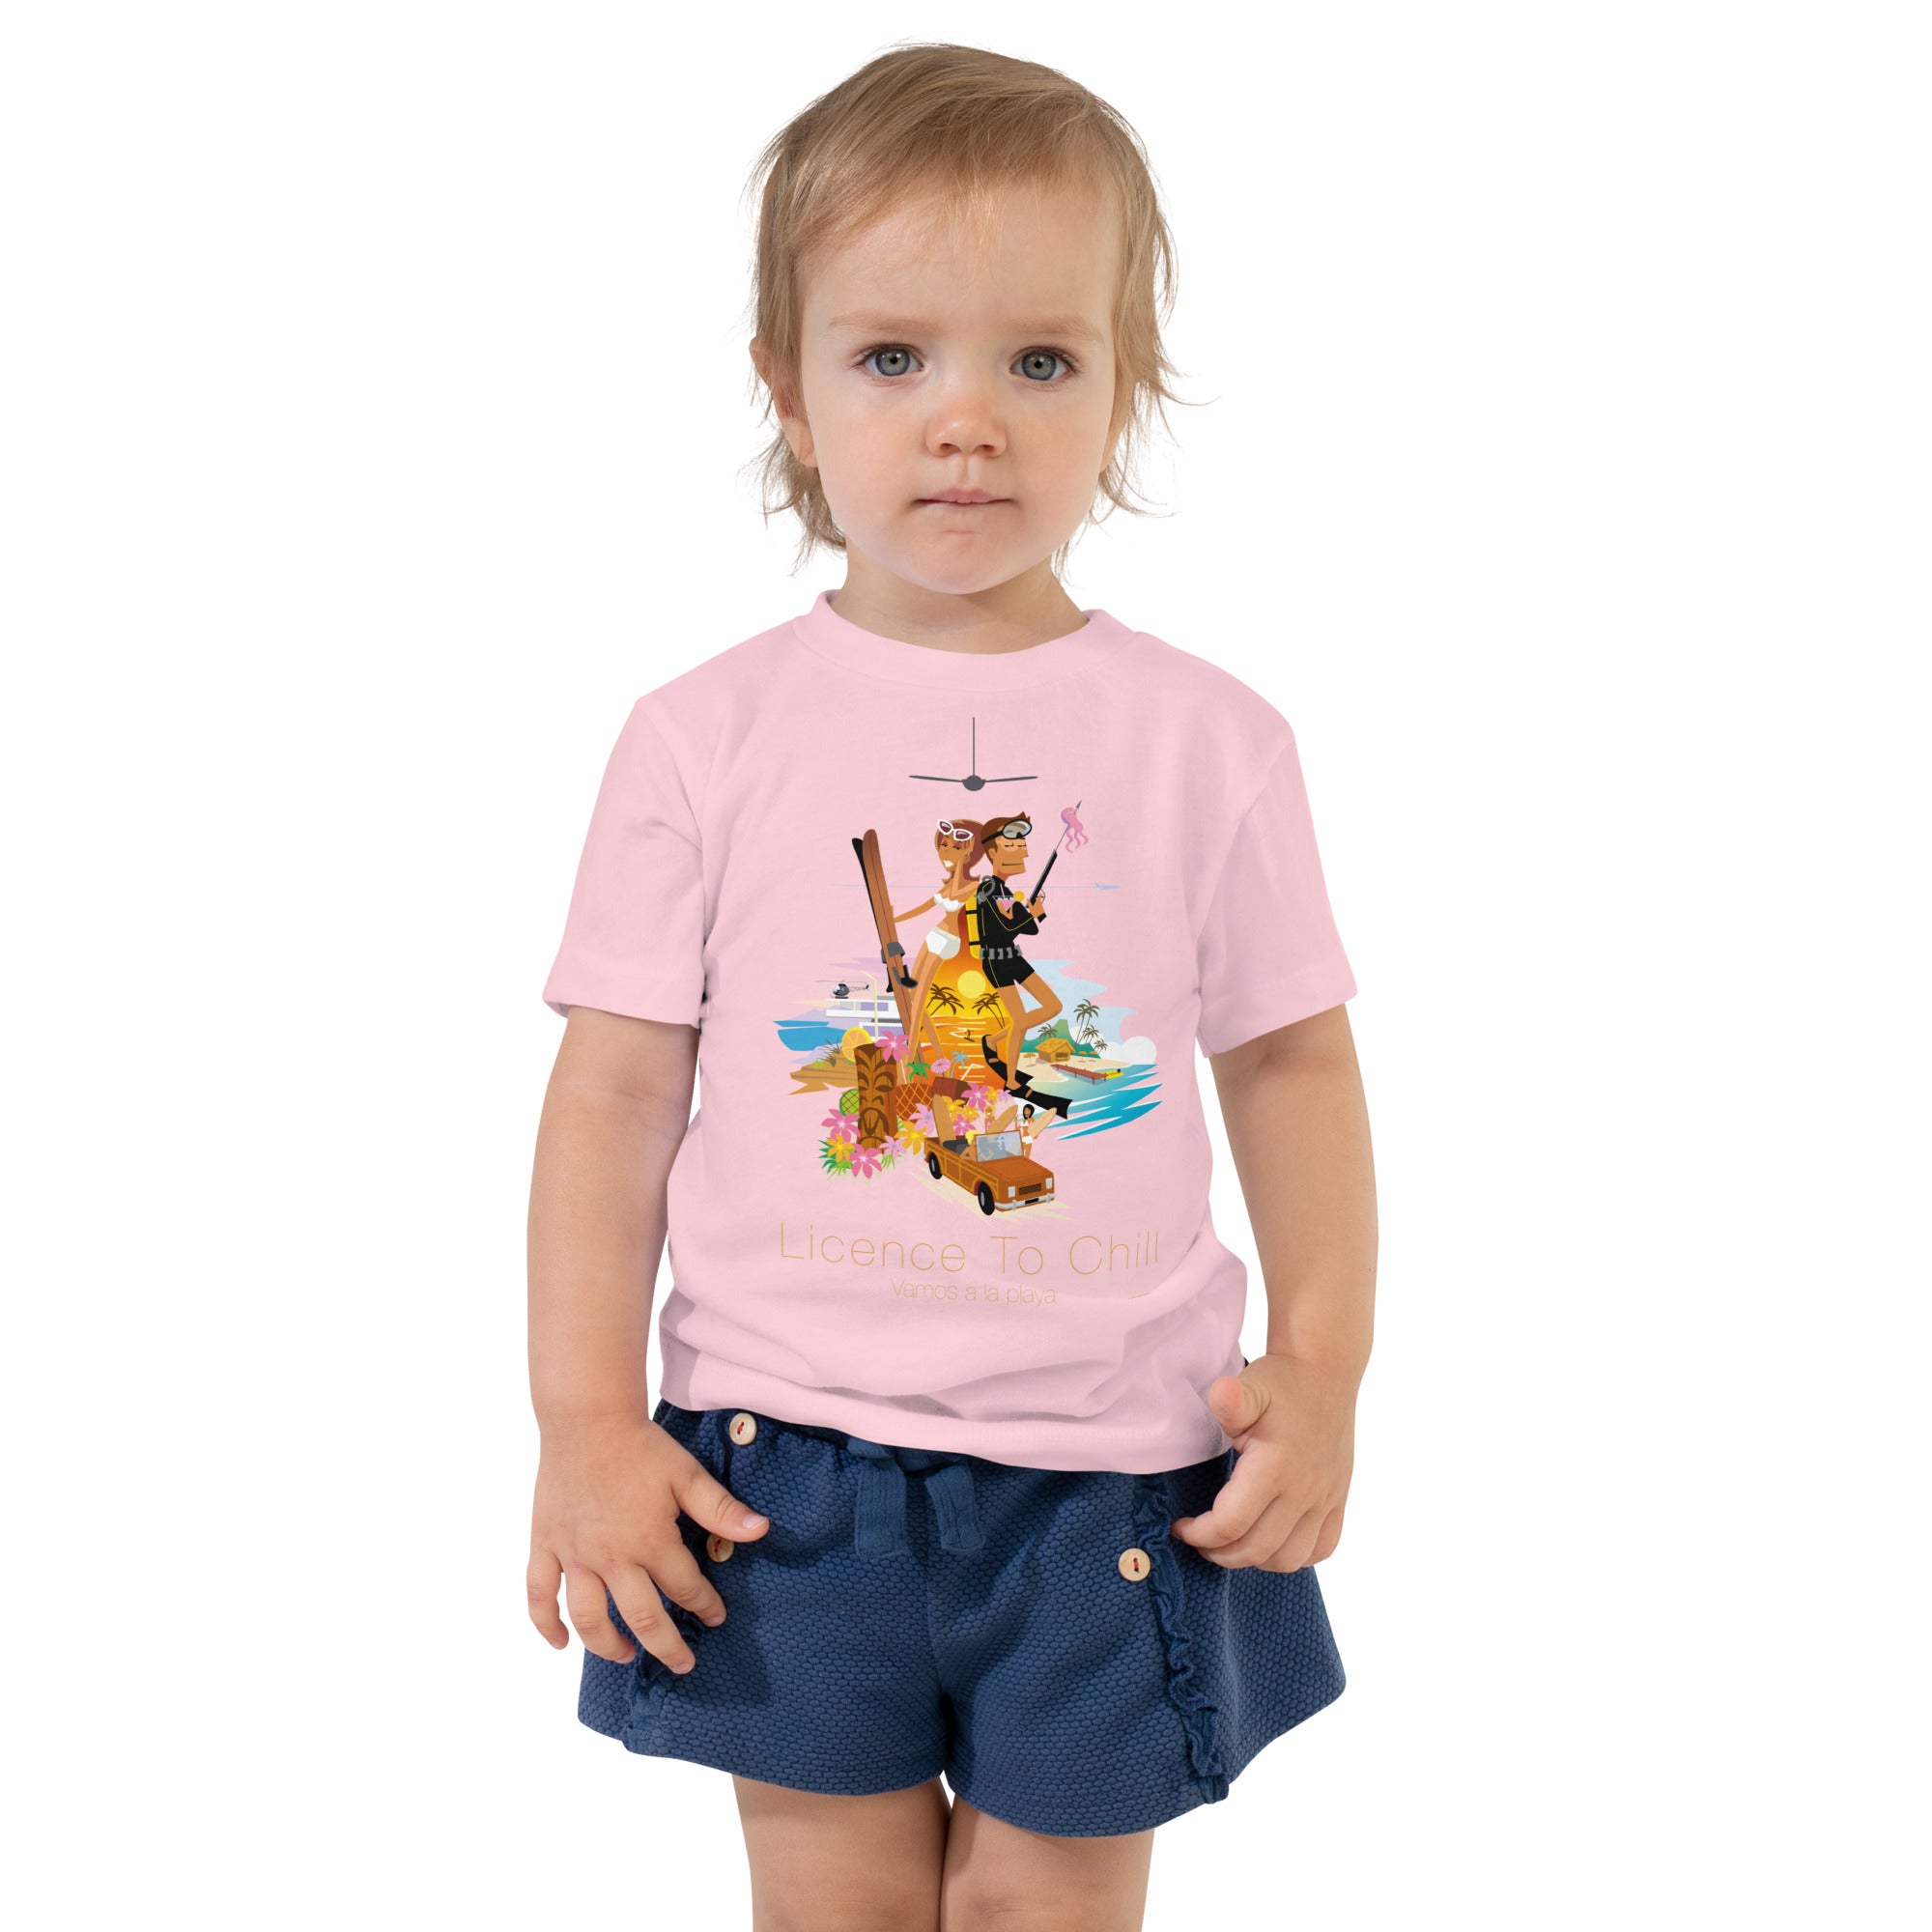 Toddler T-shirt License to Chill Vamos a la Playa